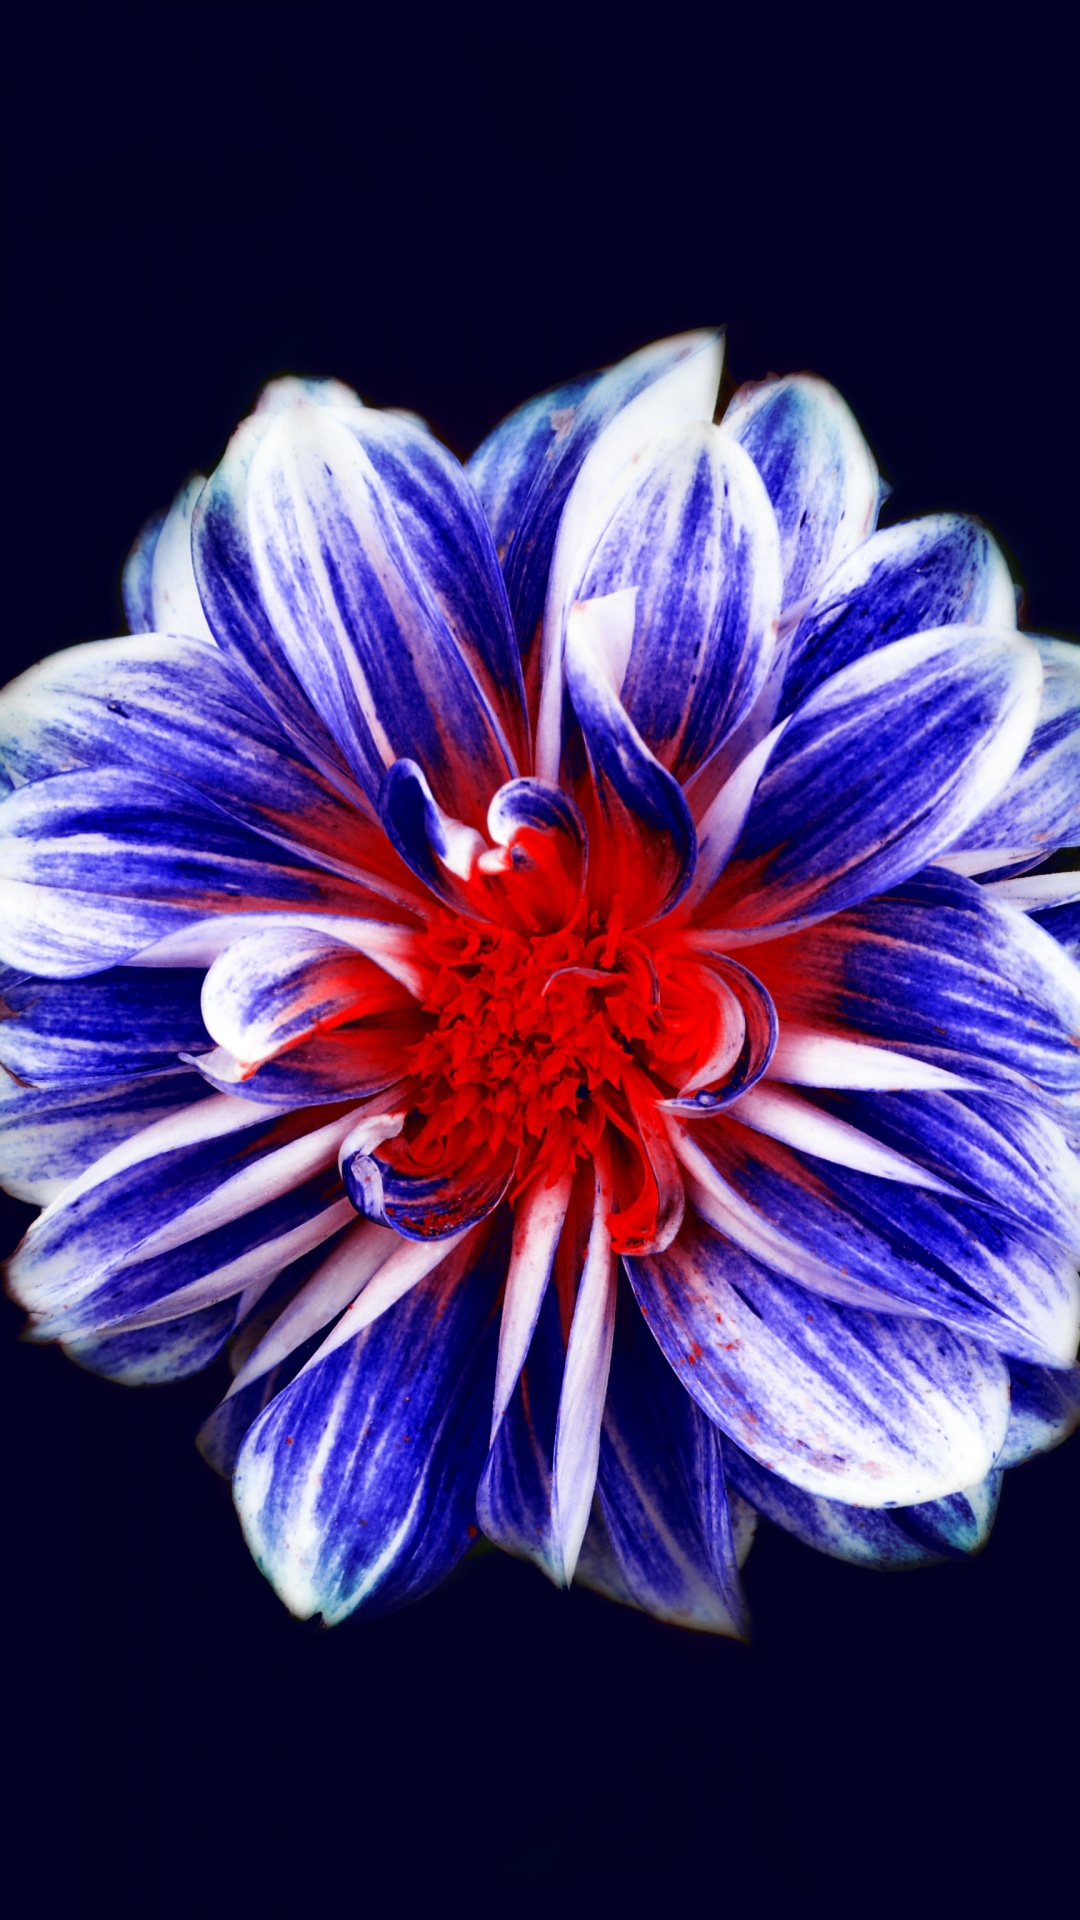 Fleur Violette et Blanche Sur Fond Noir. Wallpaper in 1080x1920 Resolution